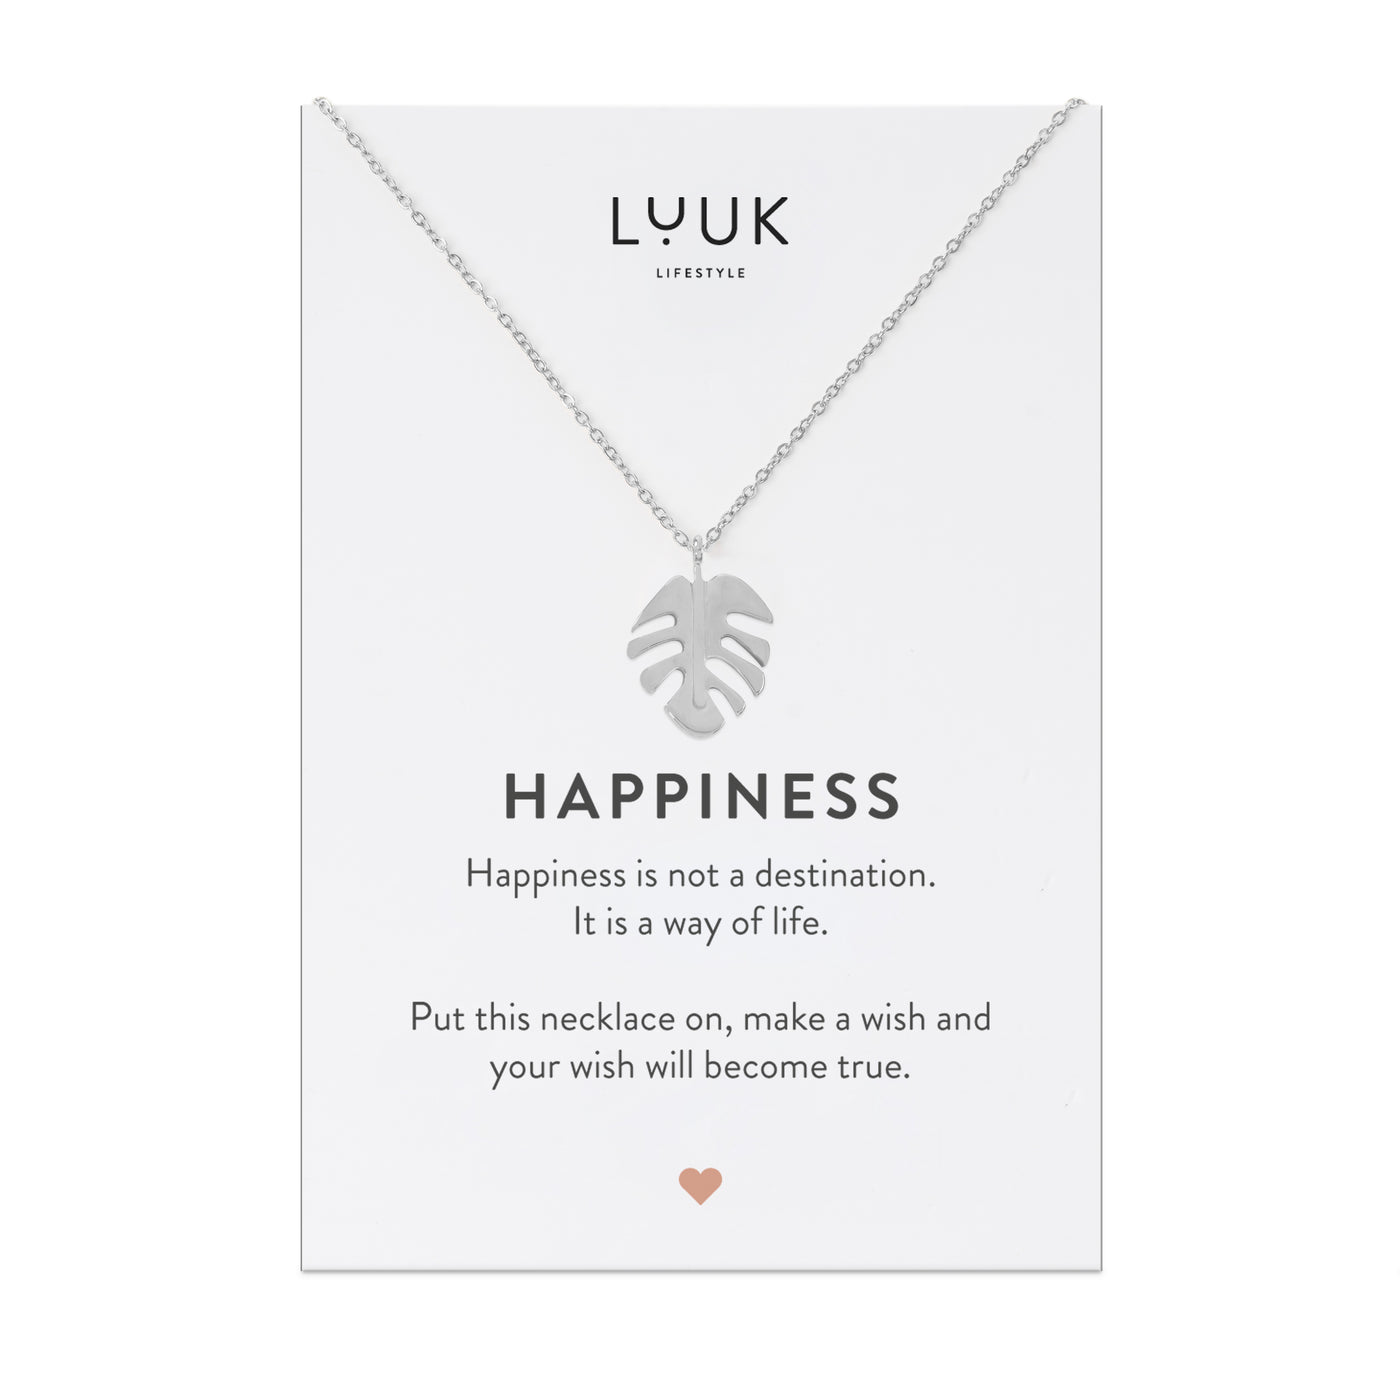 Halskette mit Monstera Blatt Anhänger aus Edelstahl auf Happiness Spruchkarte von der Marke Luuk Lifestyle